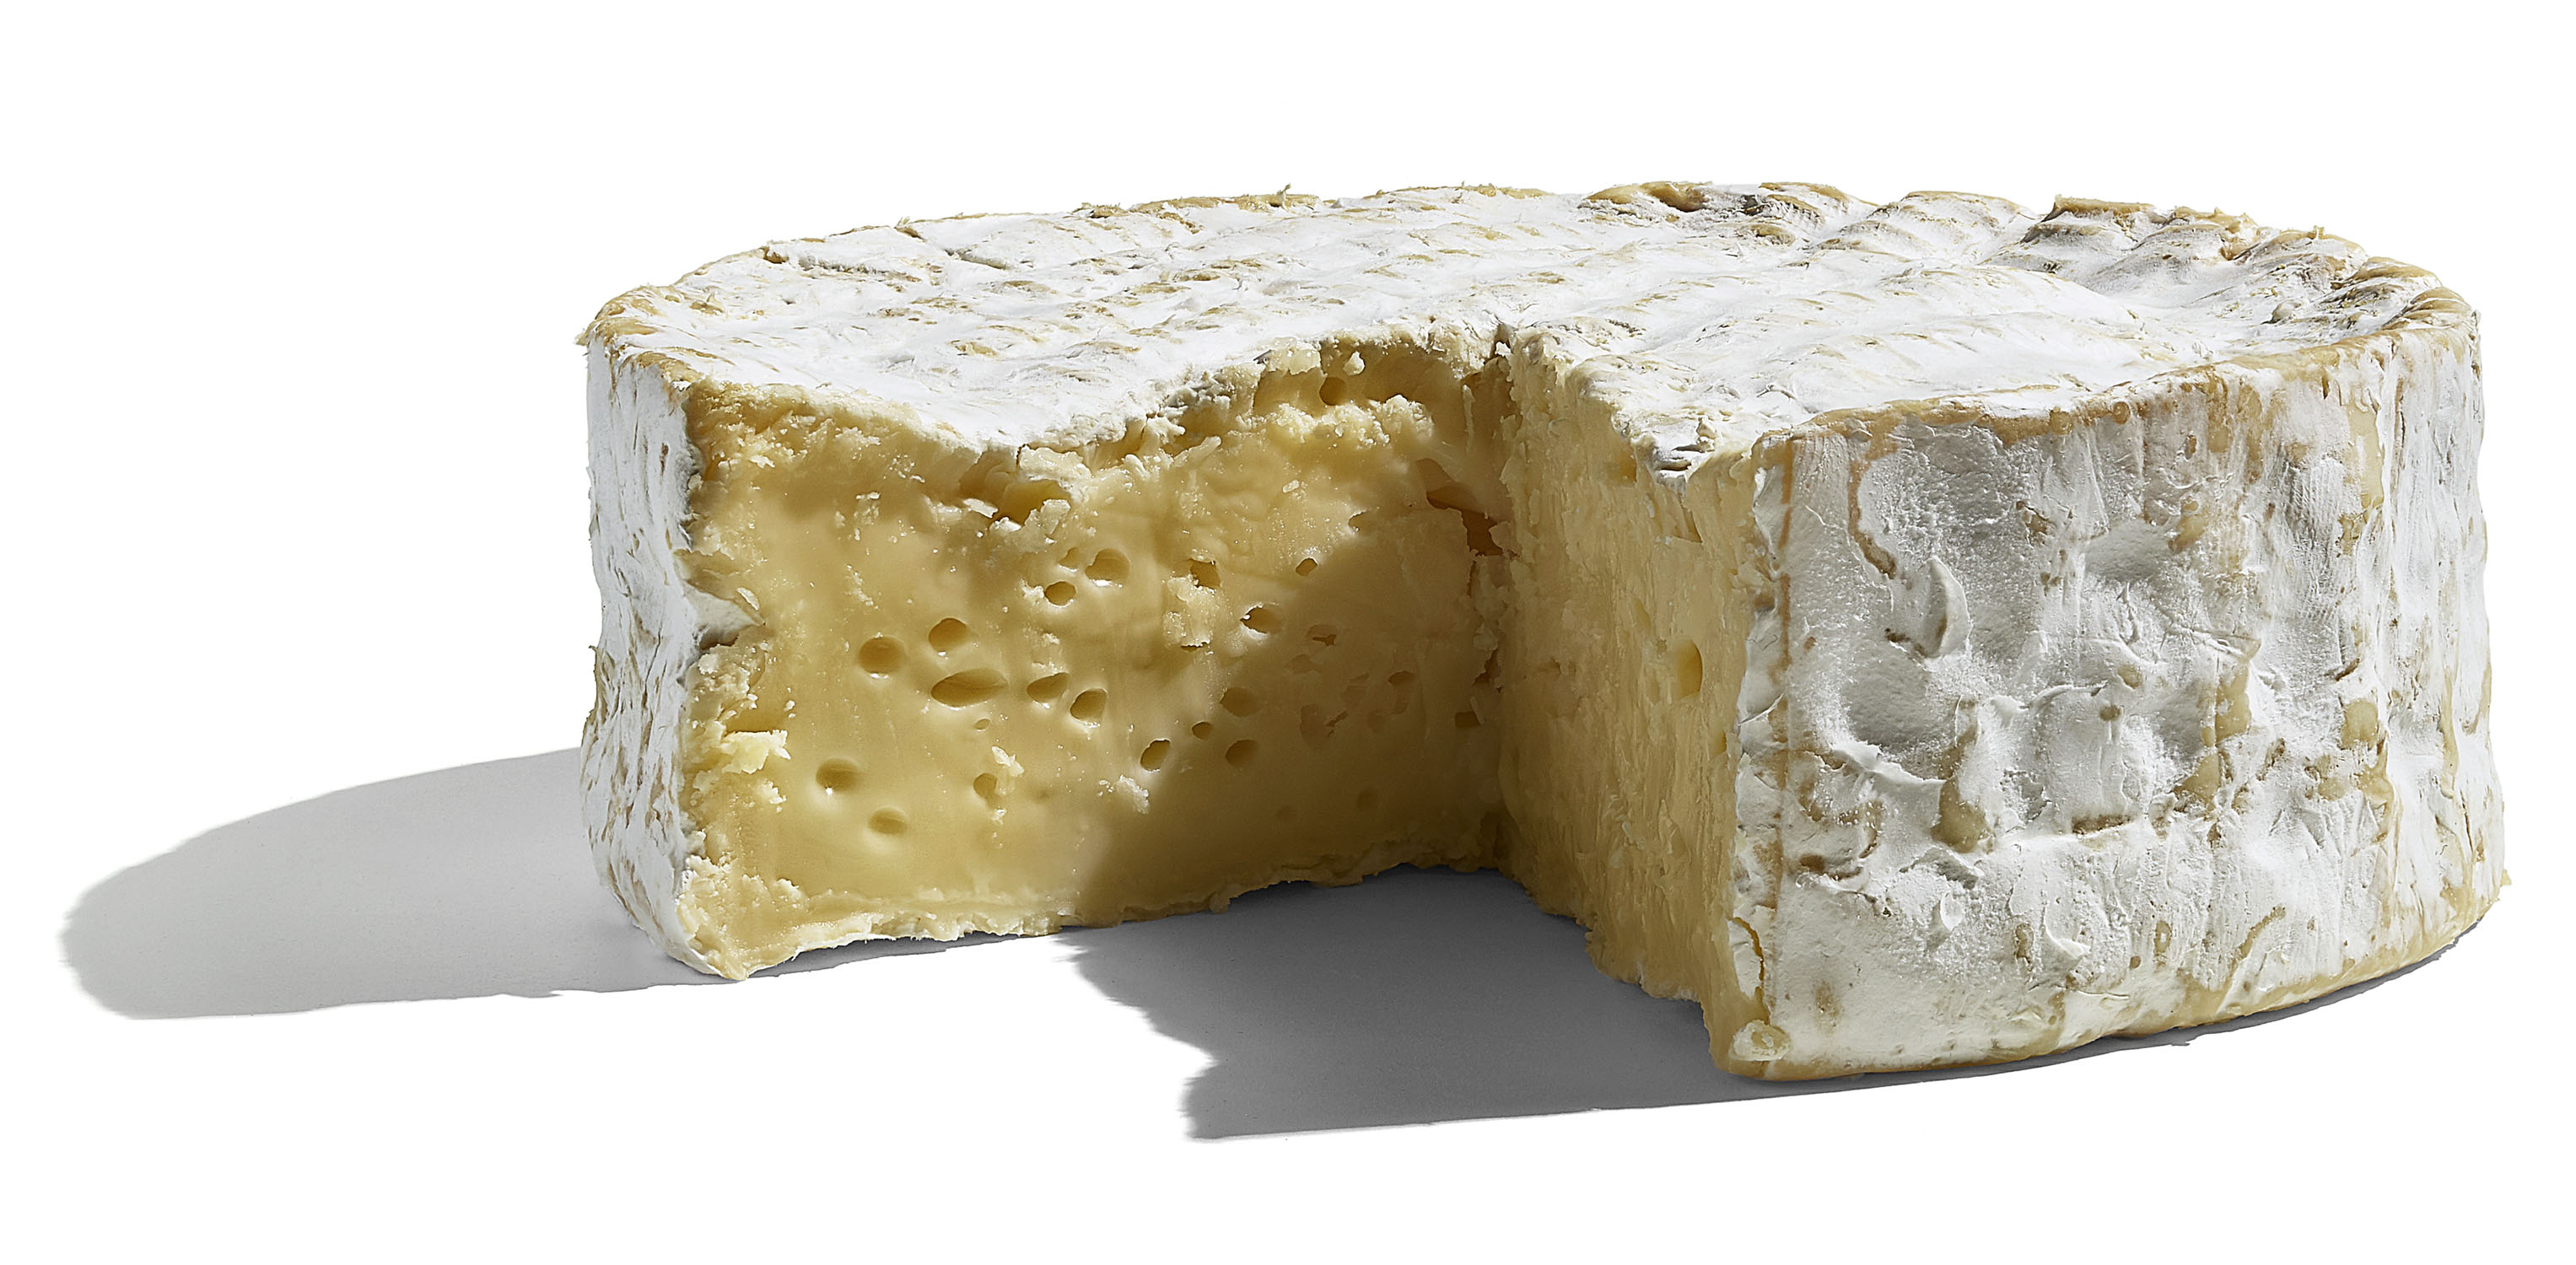 WFM_CheeseBoard_Cheese-4